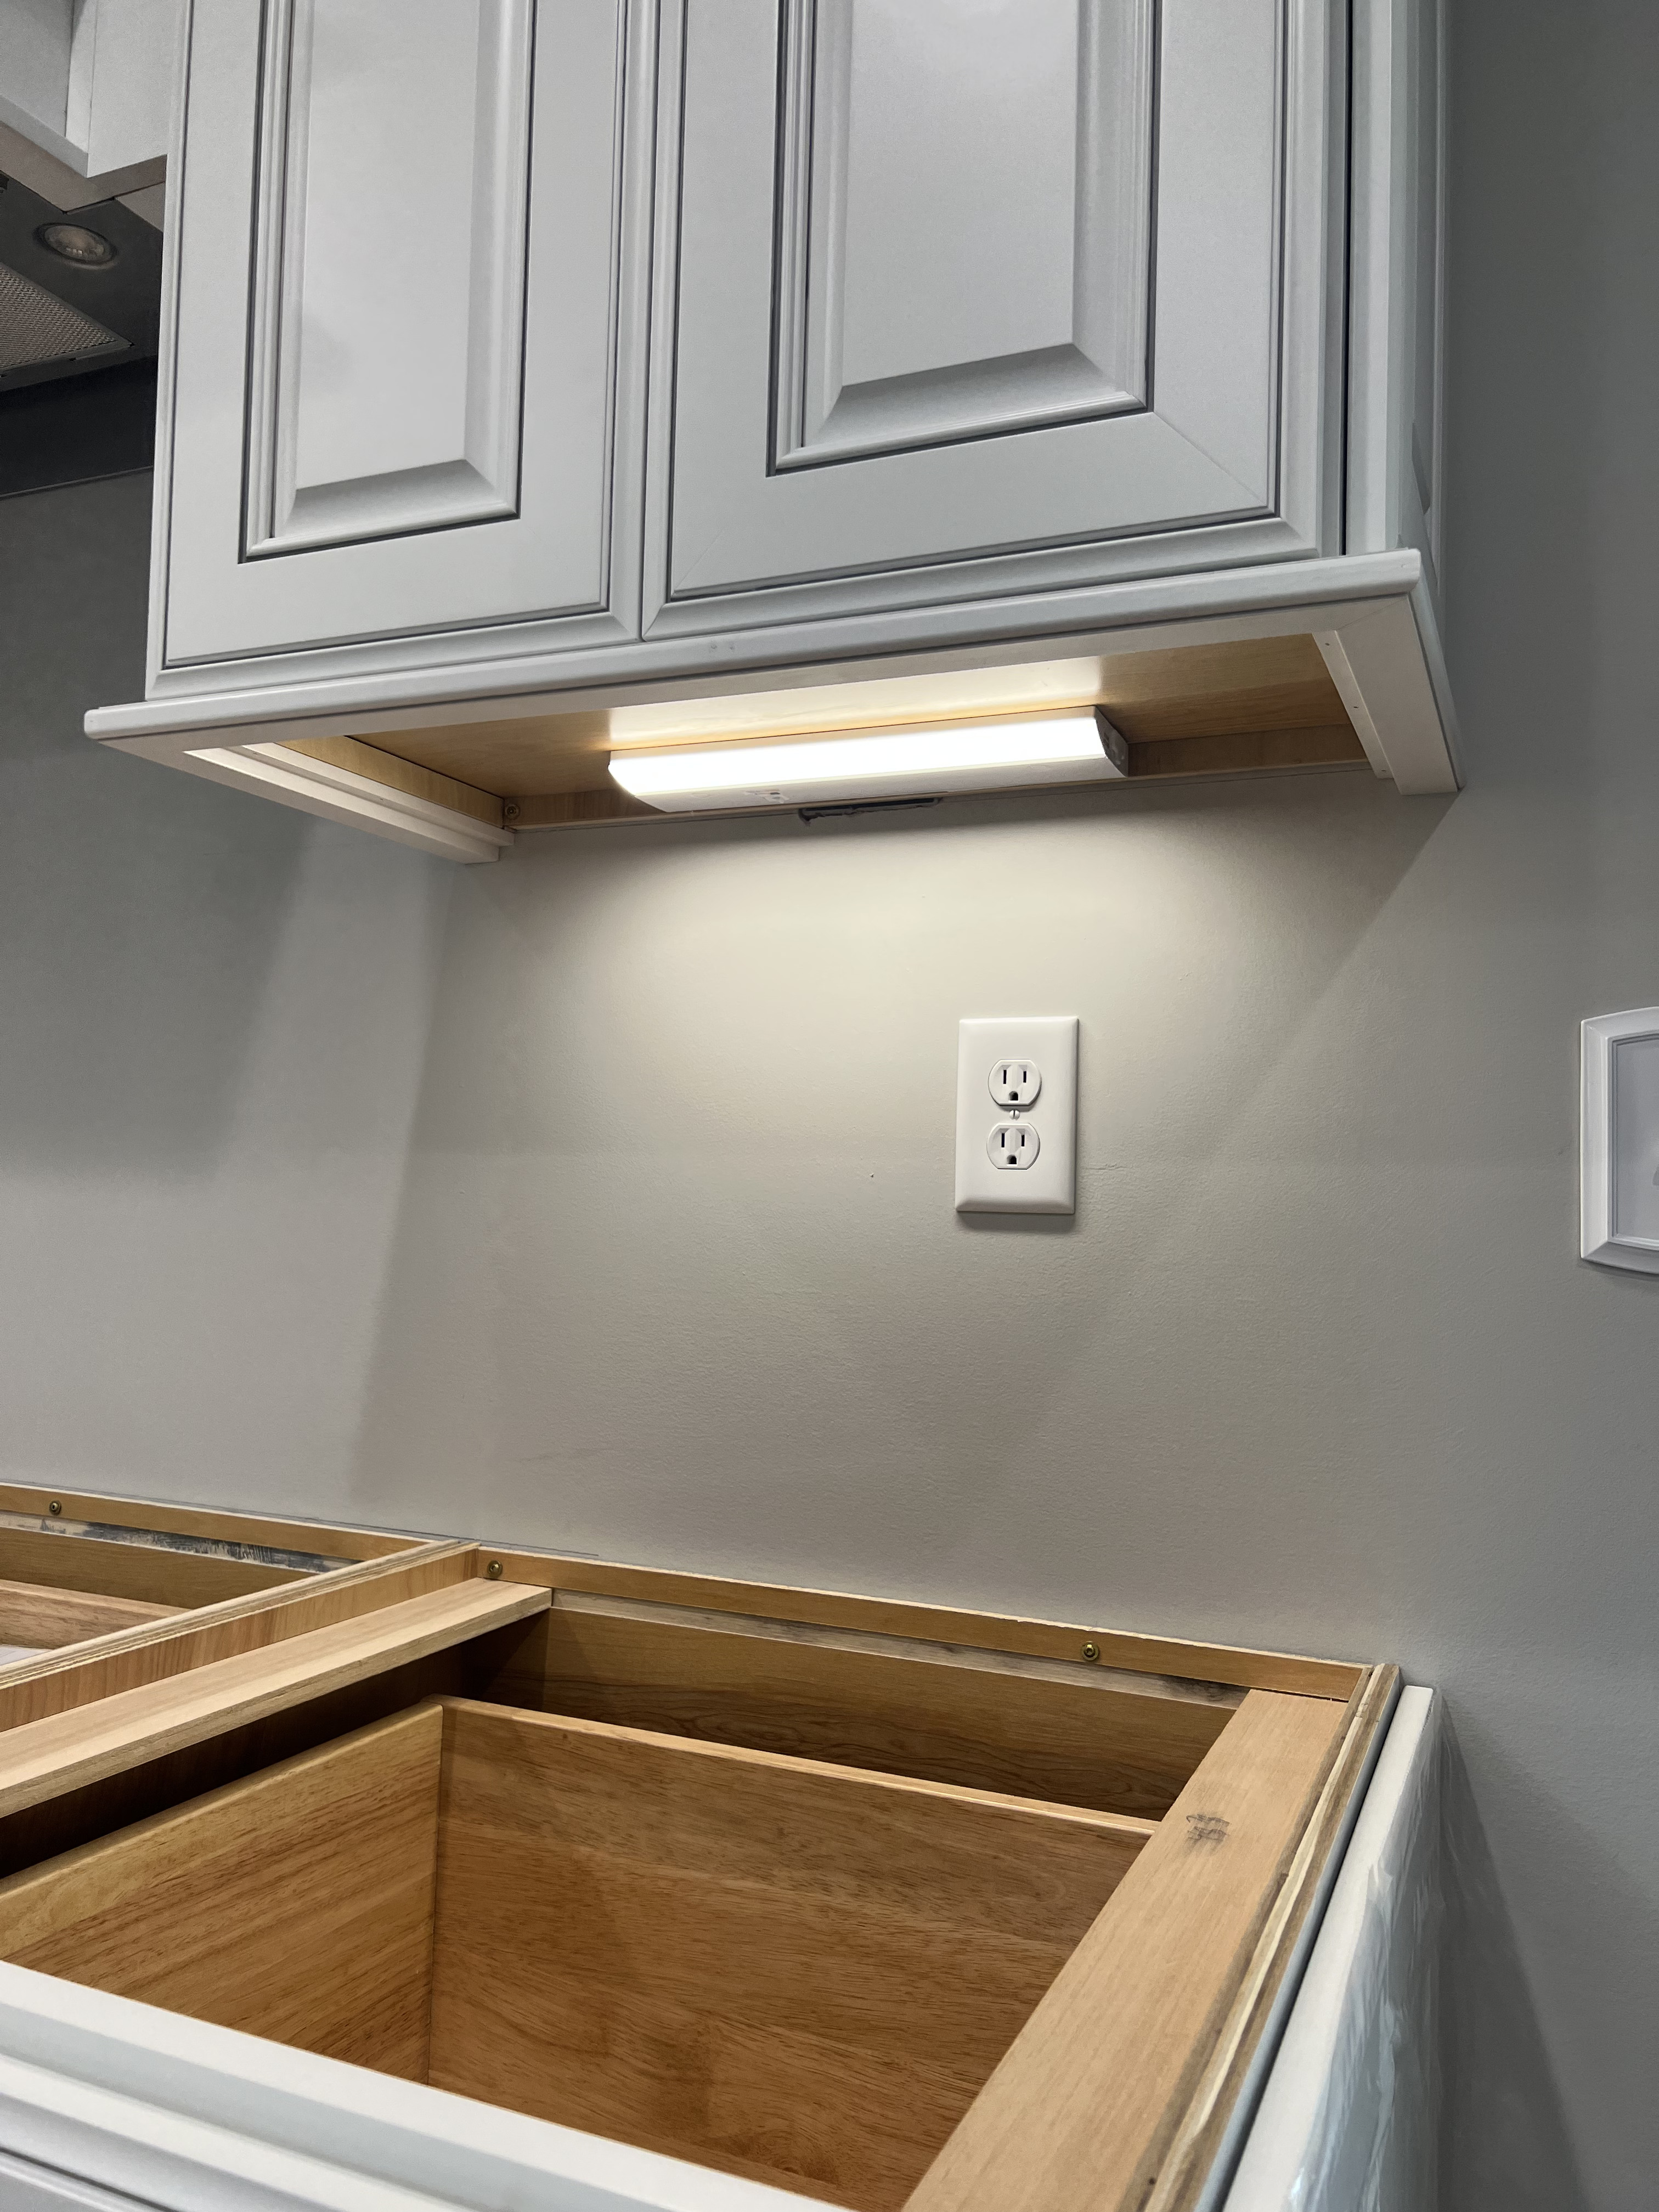 Installation of under cabinet lighting in kitchen